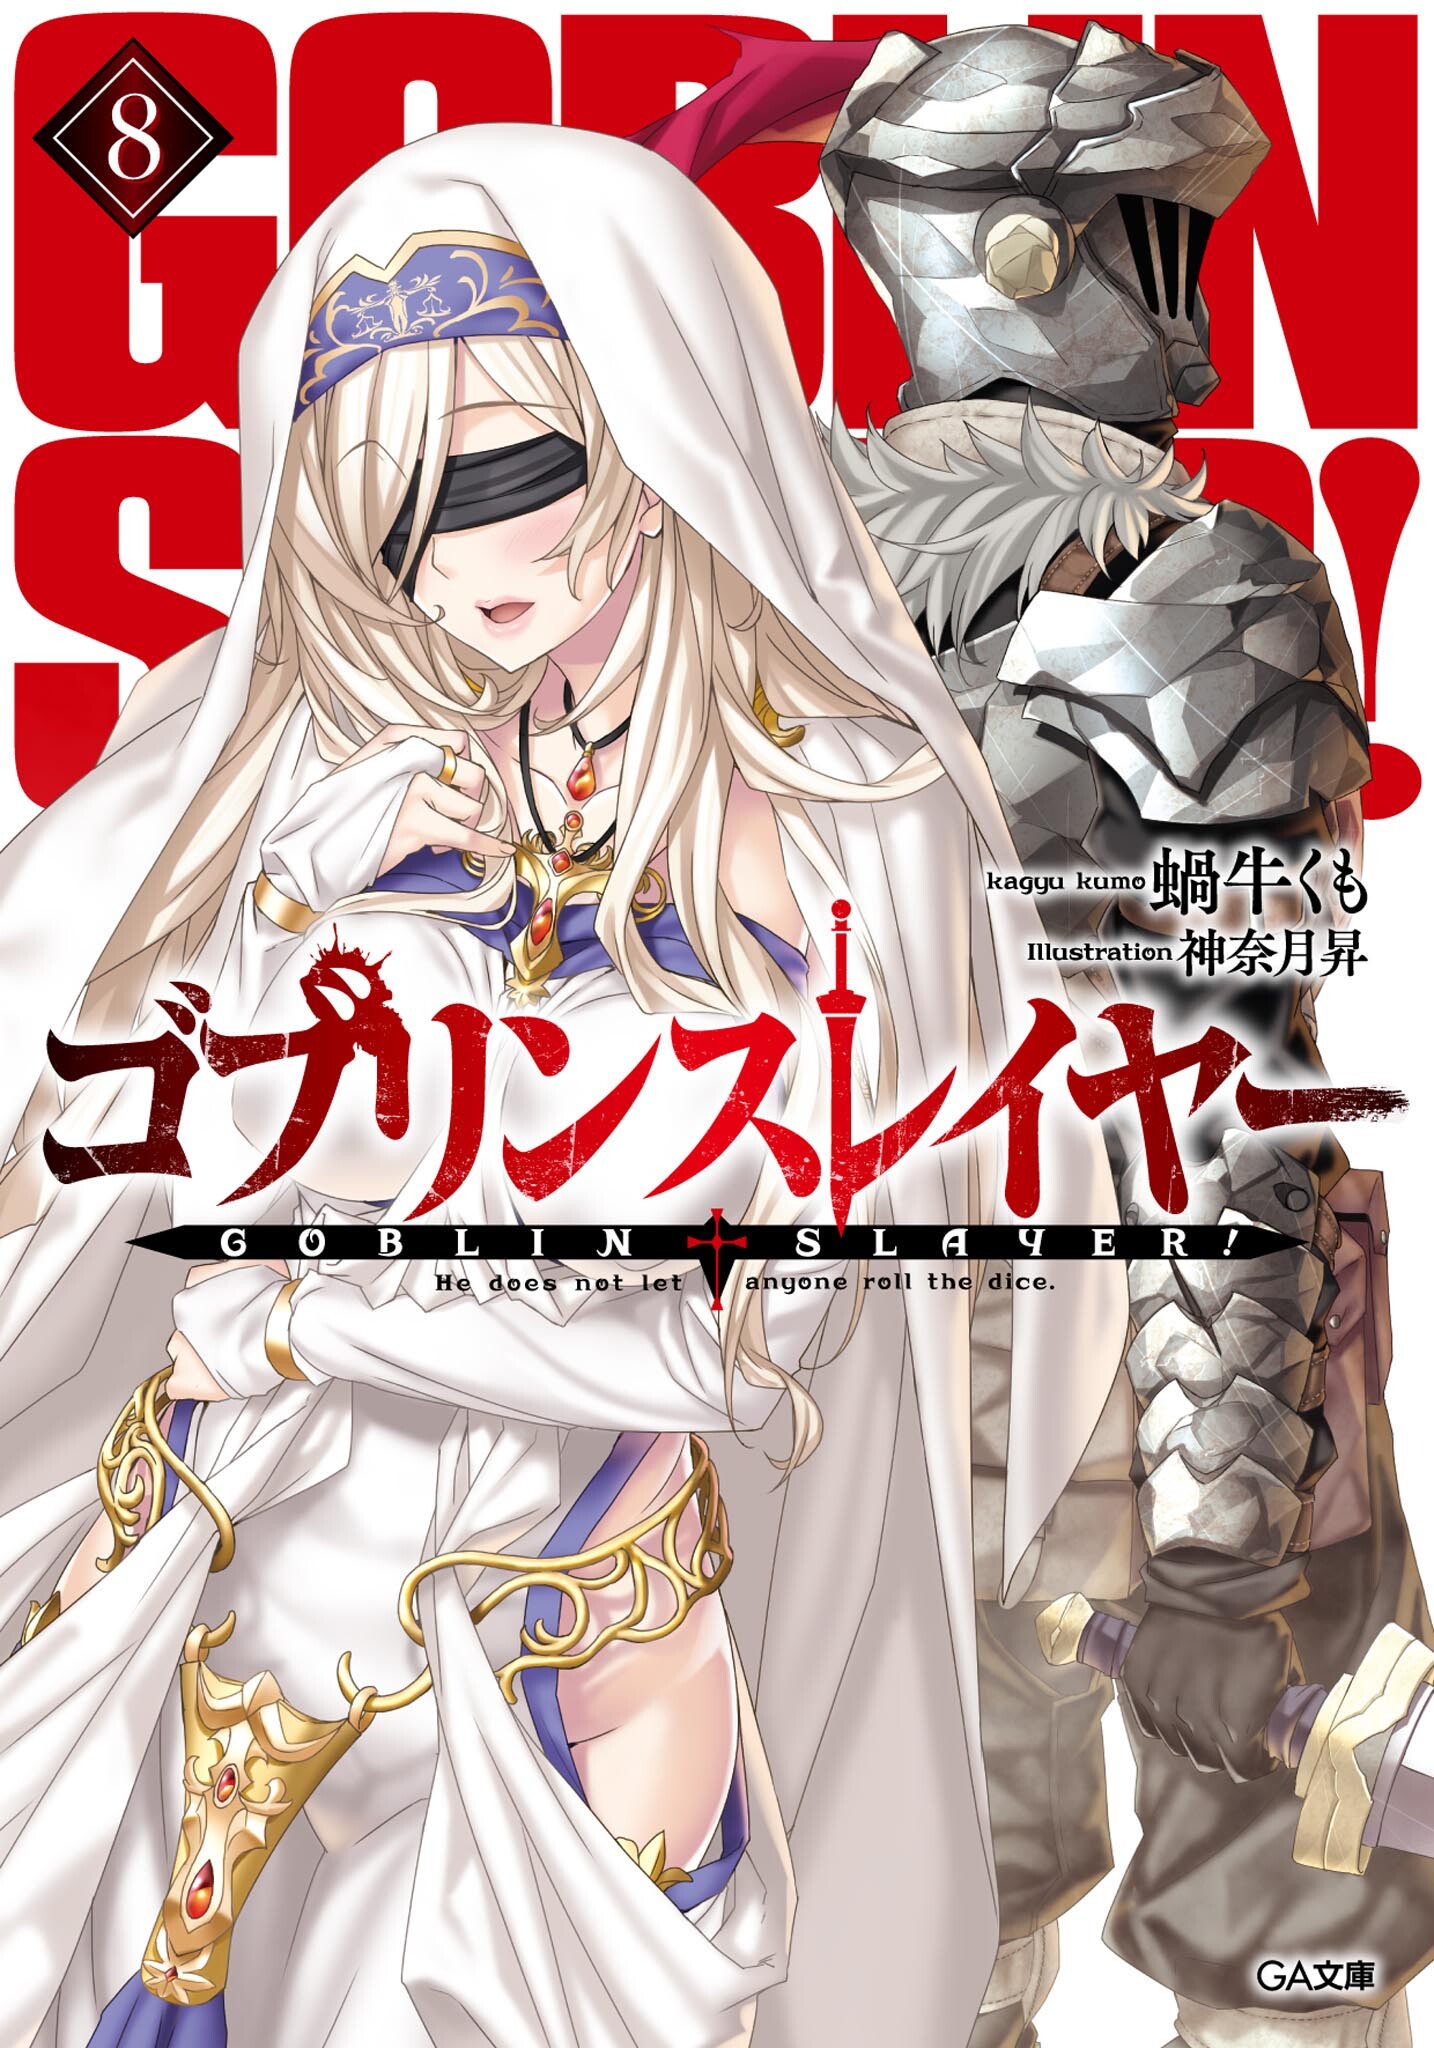 Light Novel Volume 8  Goblin Slayer Wiki  Fandom